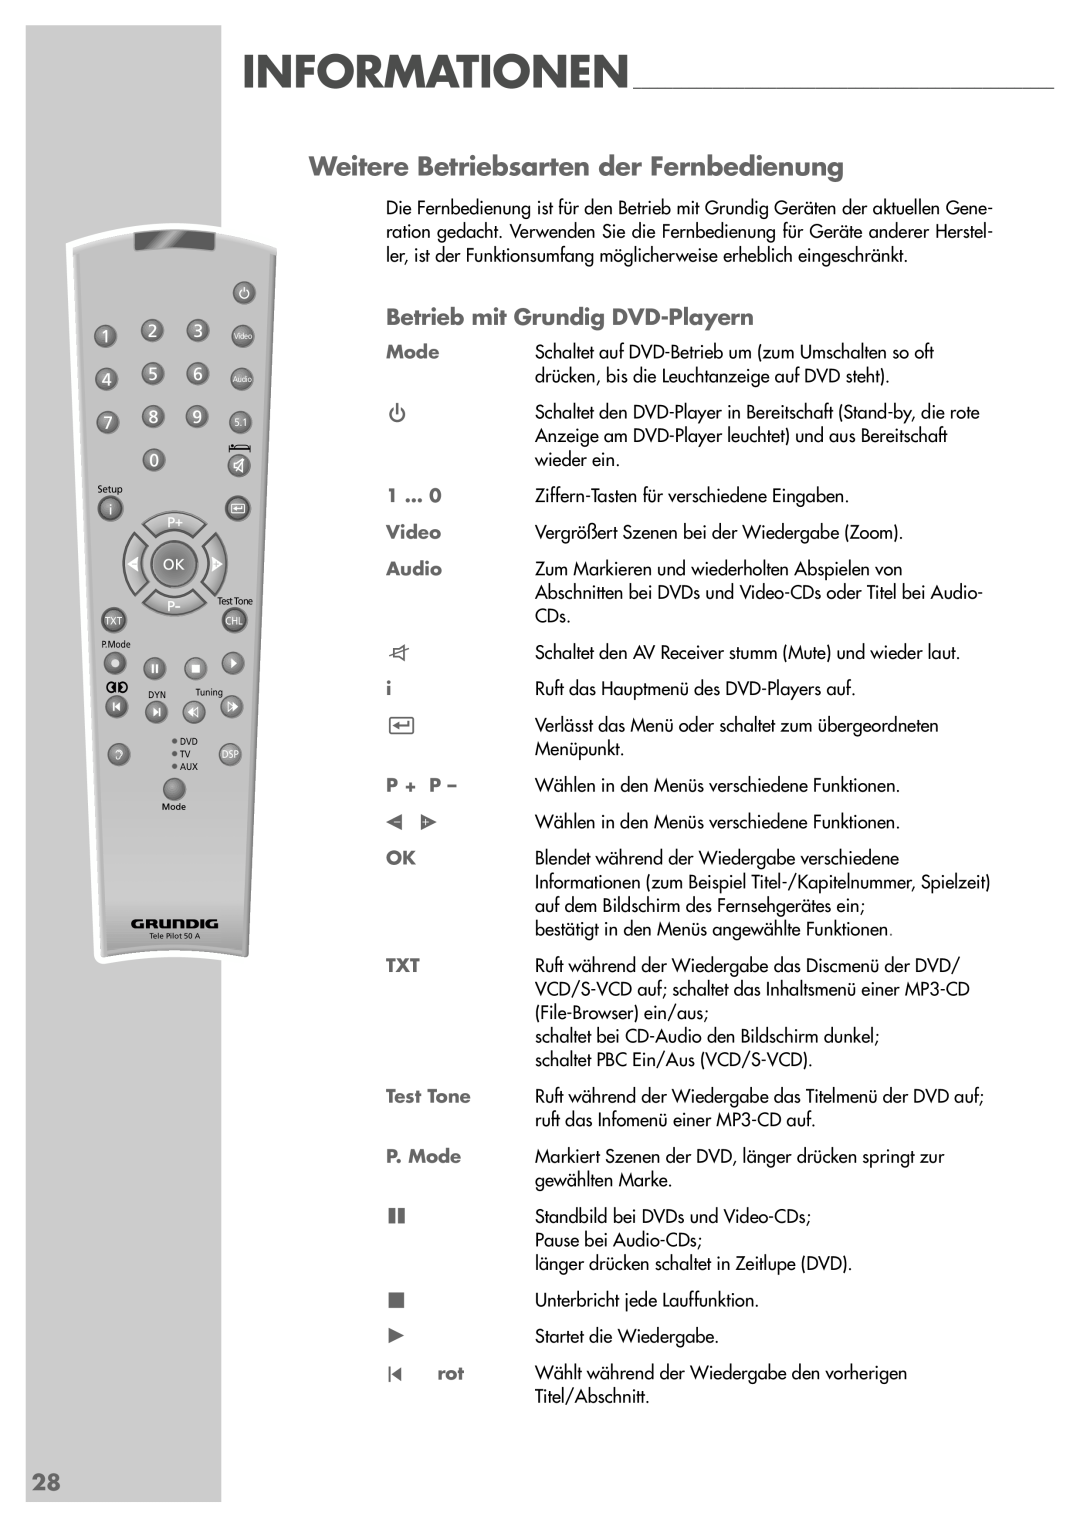 Grundig AVR 5200 DD manual Weitere Betriebsarten der Fernbedienung, Betrieb mit Grundig DVD-Playern 